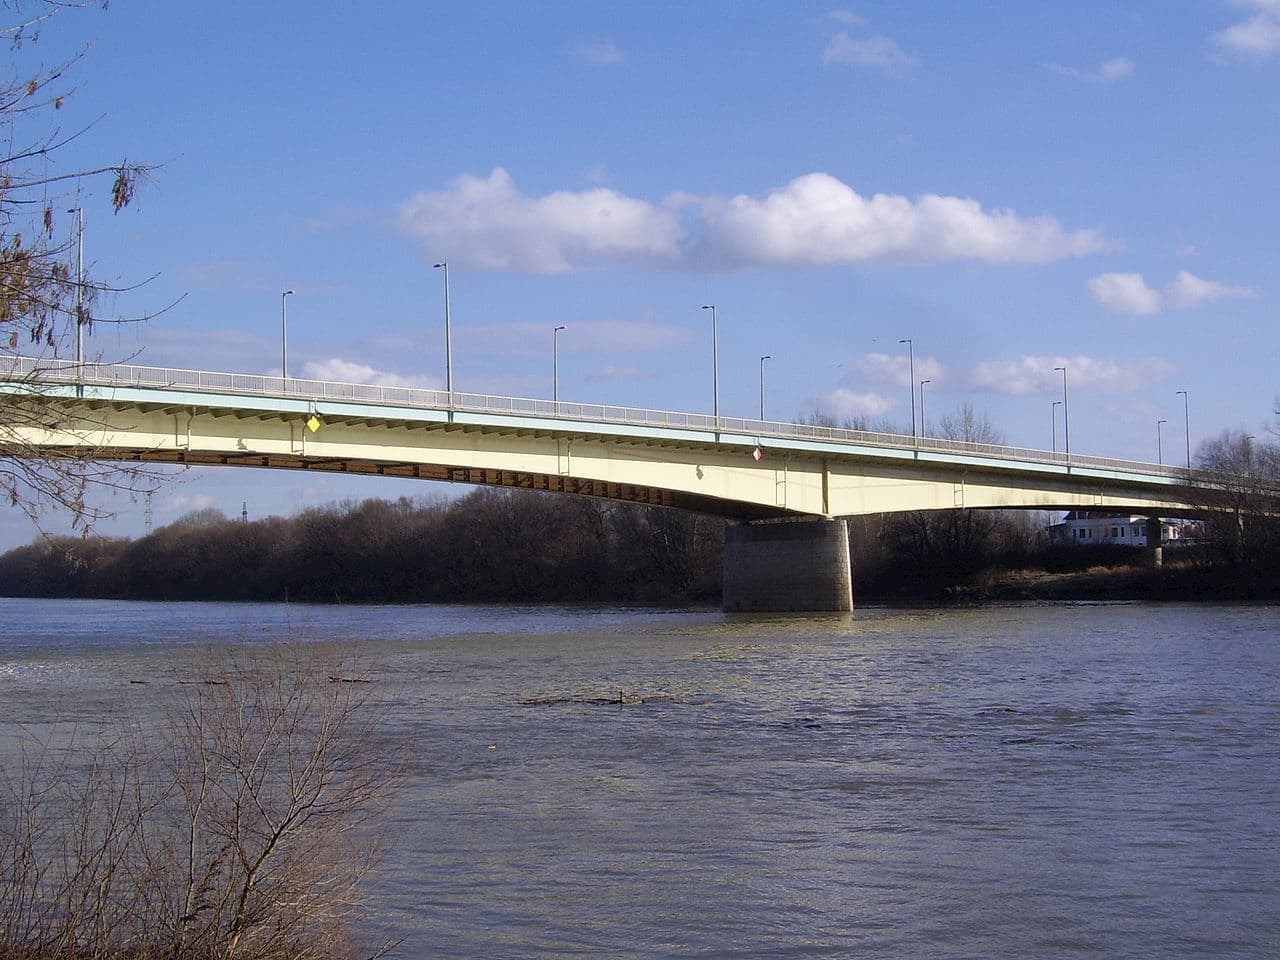 Elbontják a Bertalan híd korlátját 28 méteren, sebességkorlátozás és sávlezárás várható három hónapig